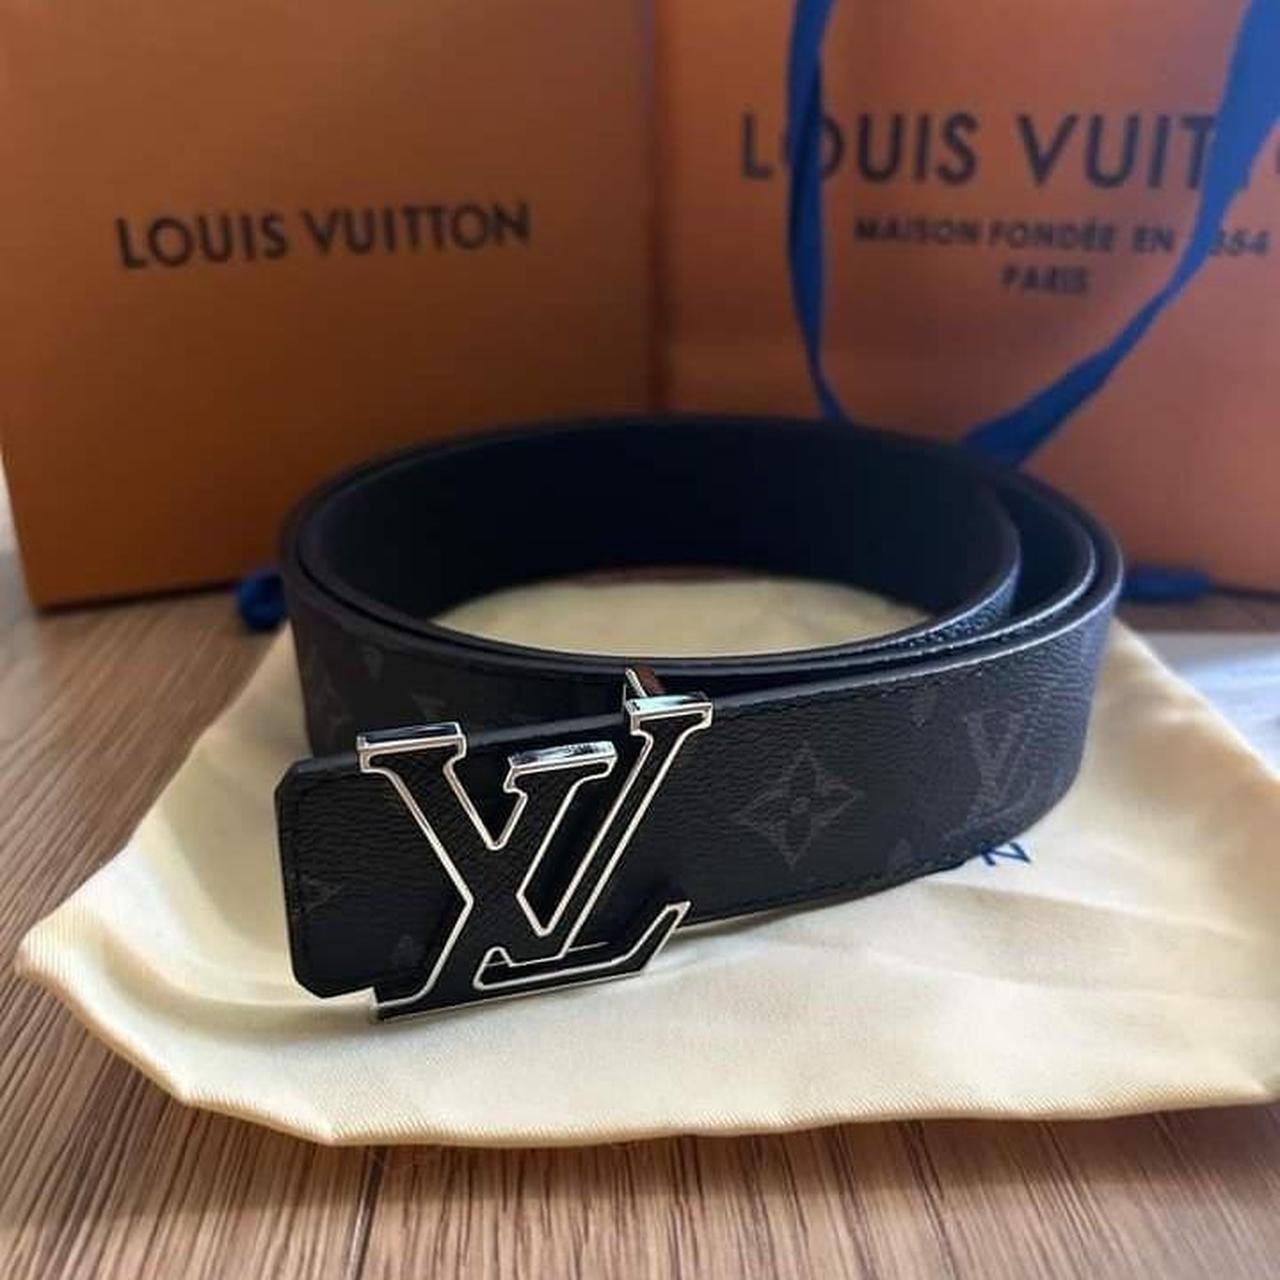 Louis Viotton Belt Size 100/40 Brand new, unused... - Depop